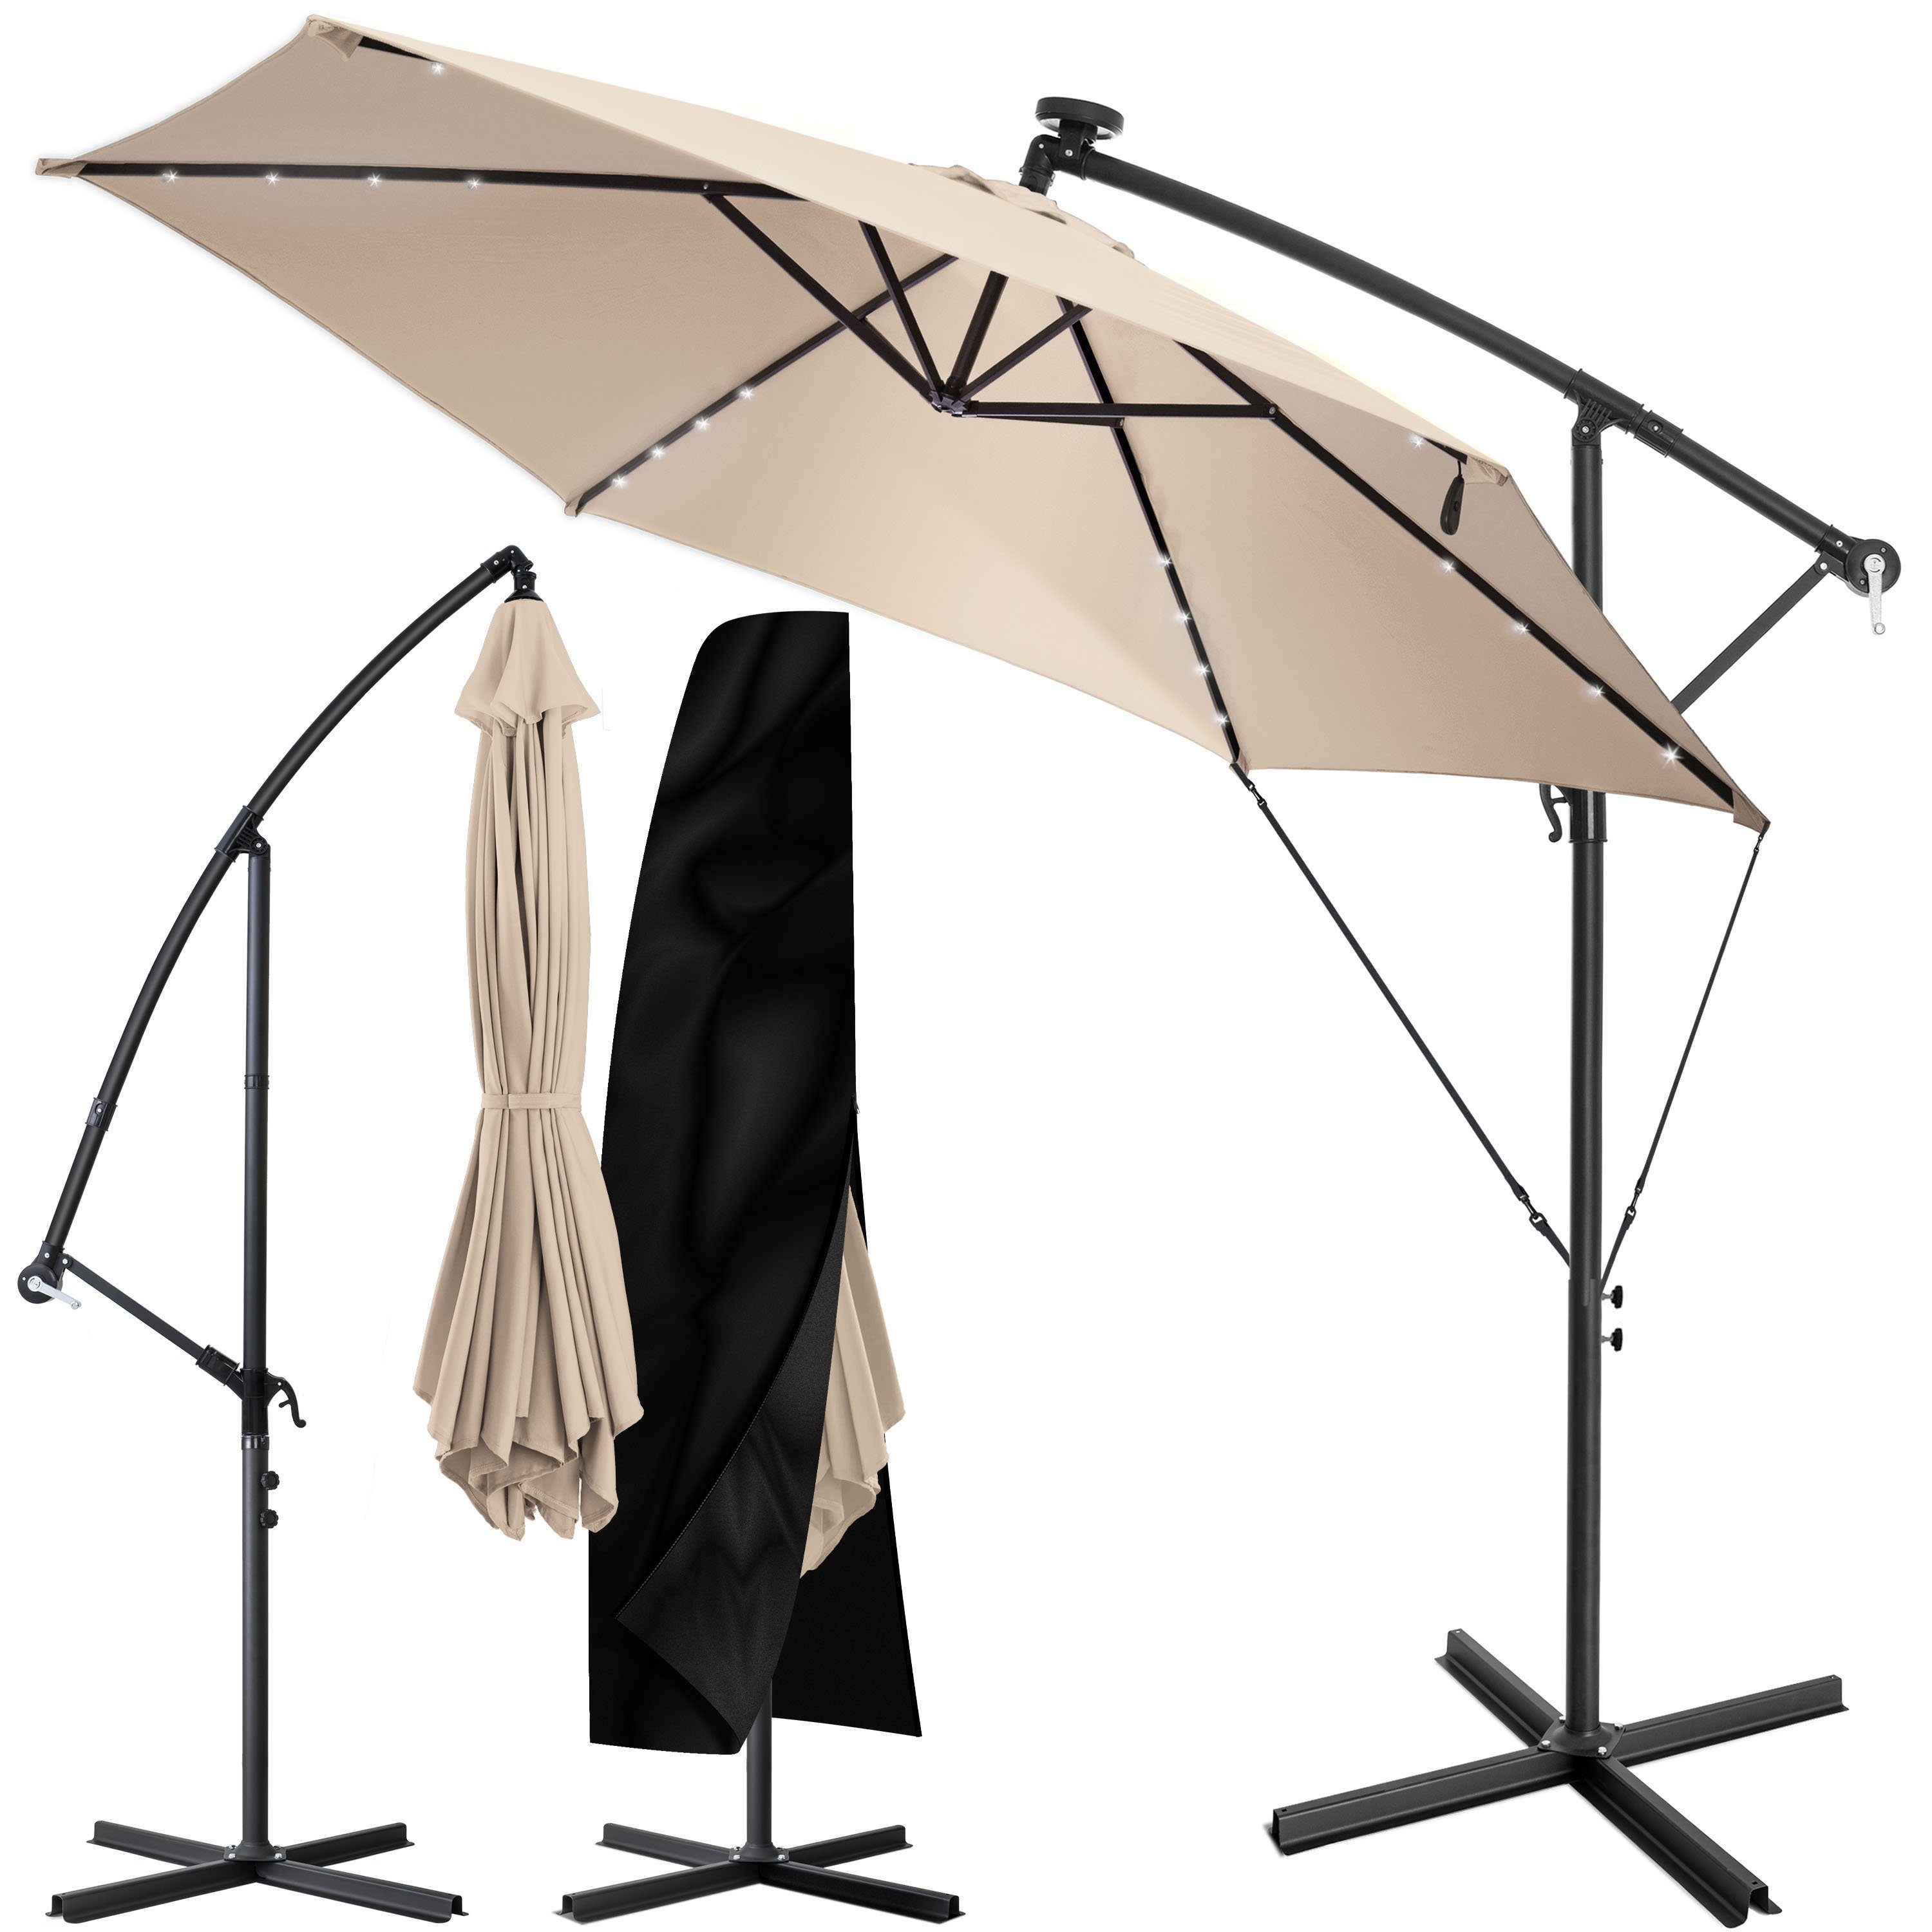 Ampelschirm Abdeckung Sonnenschirme Regenschirm Gartenschirm Schutzhaube DE 